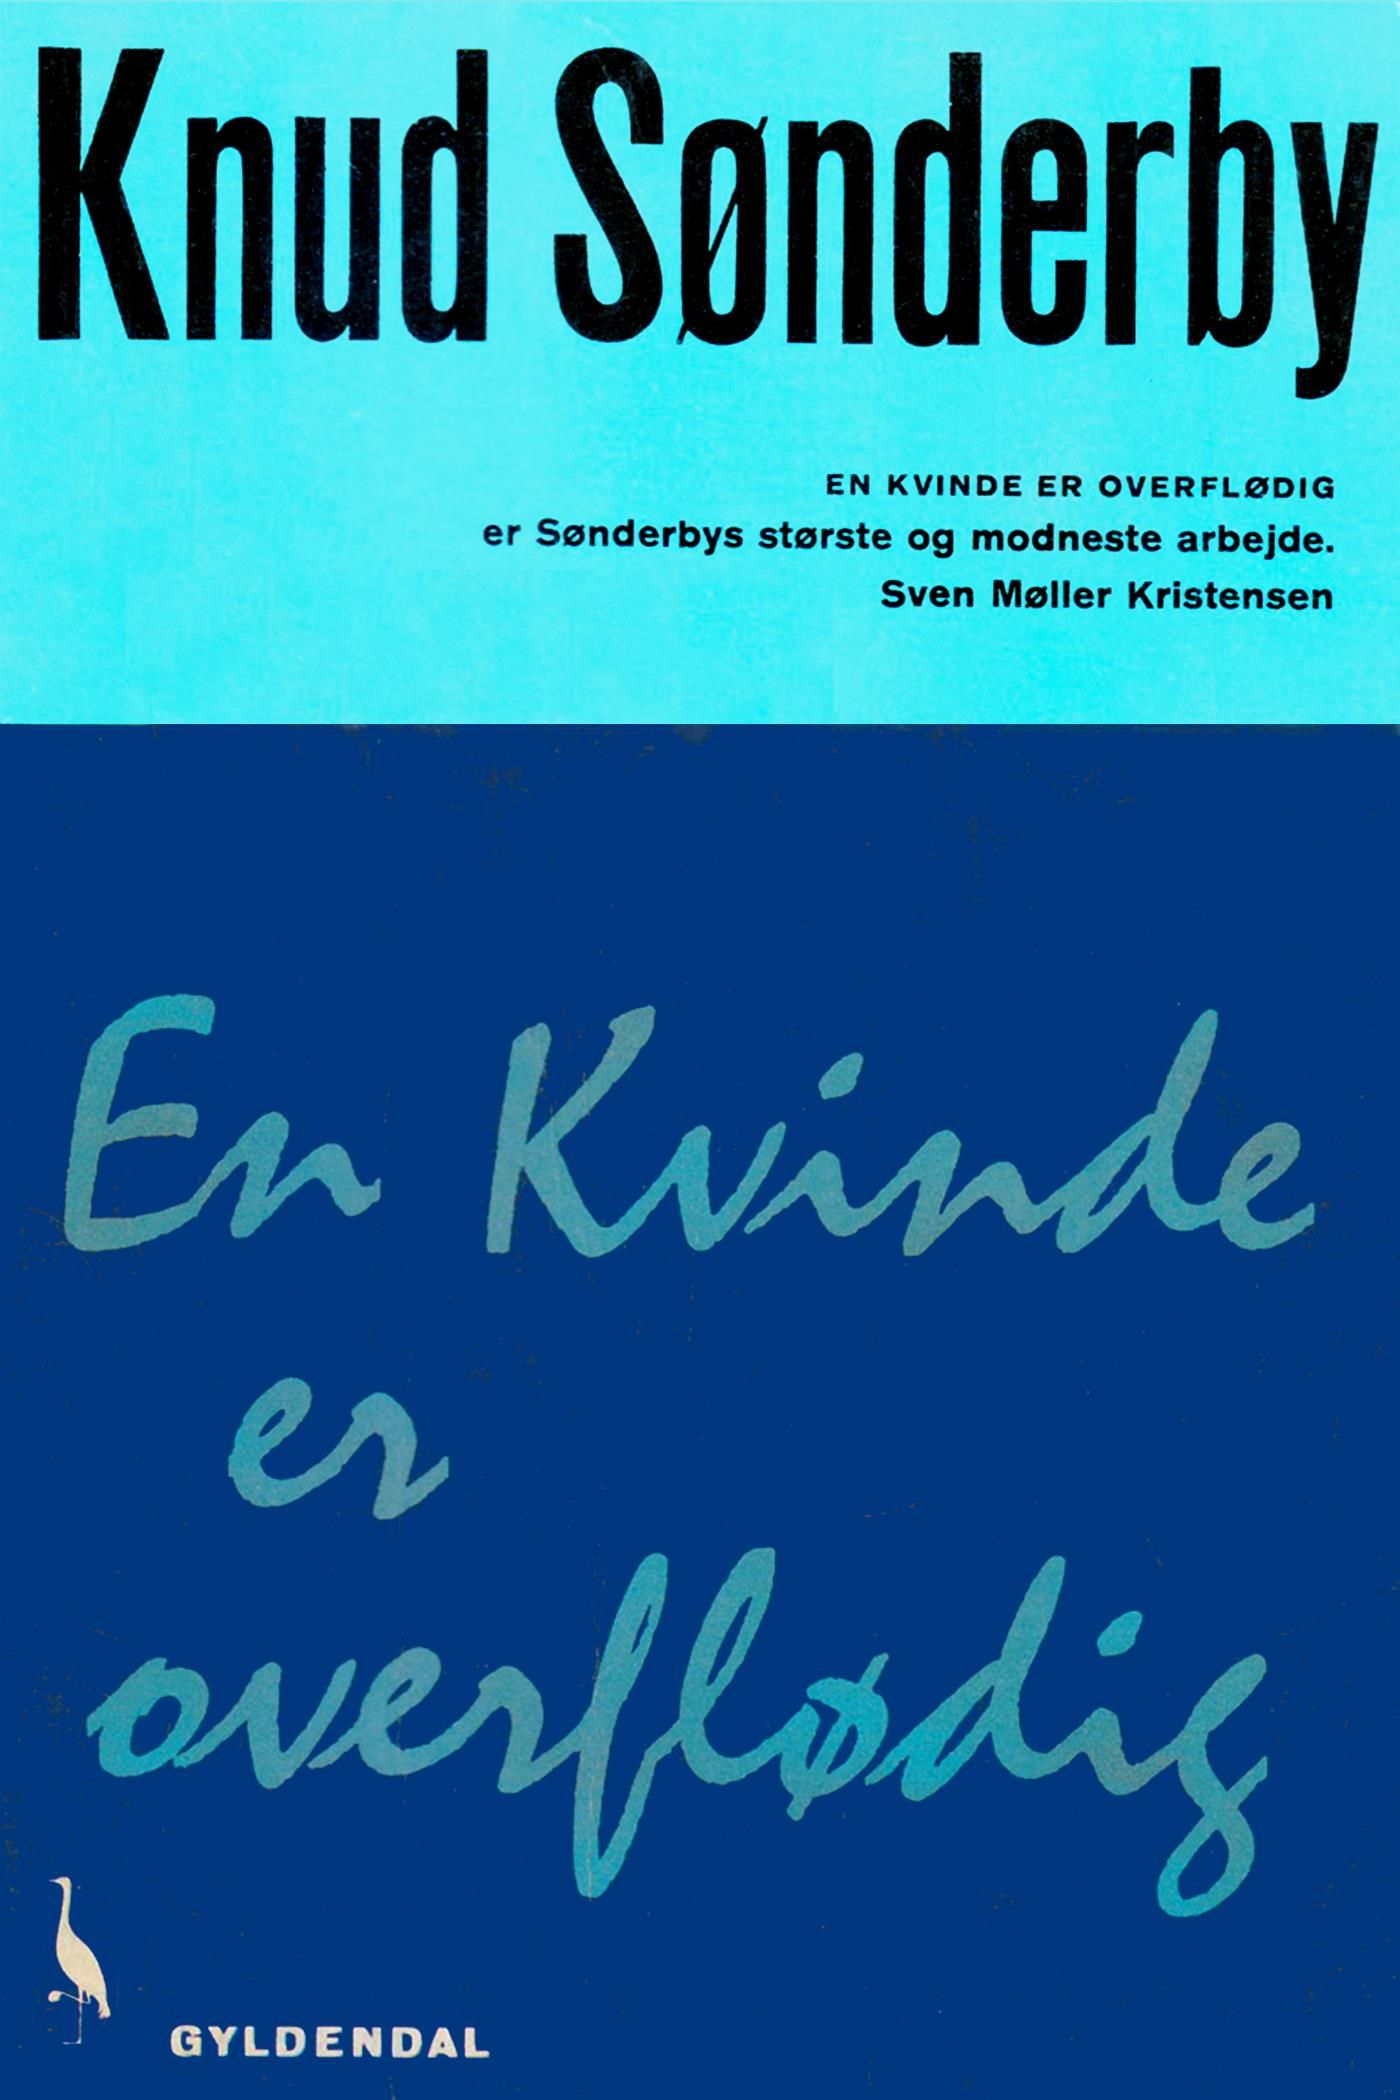 En kvinde er overflødig, e-bok av Knud Sønderby